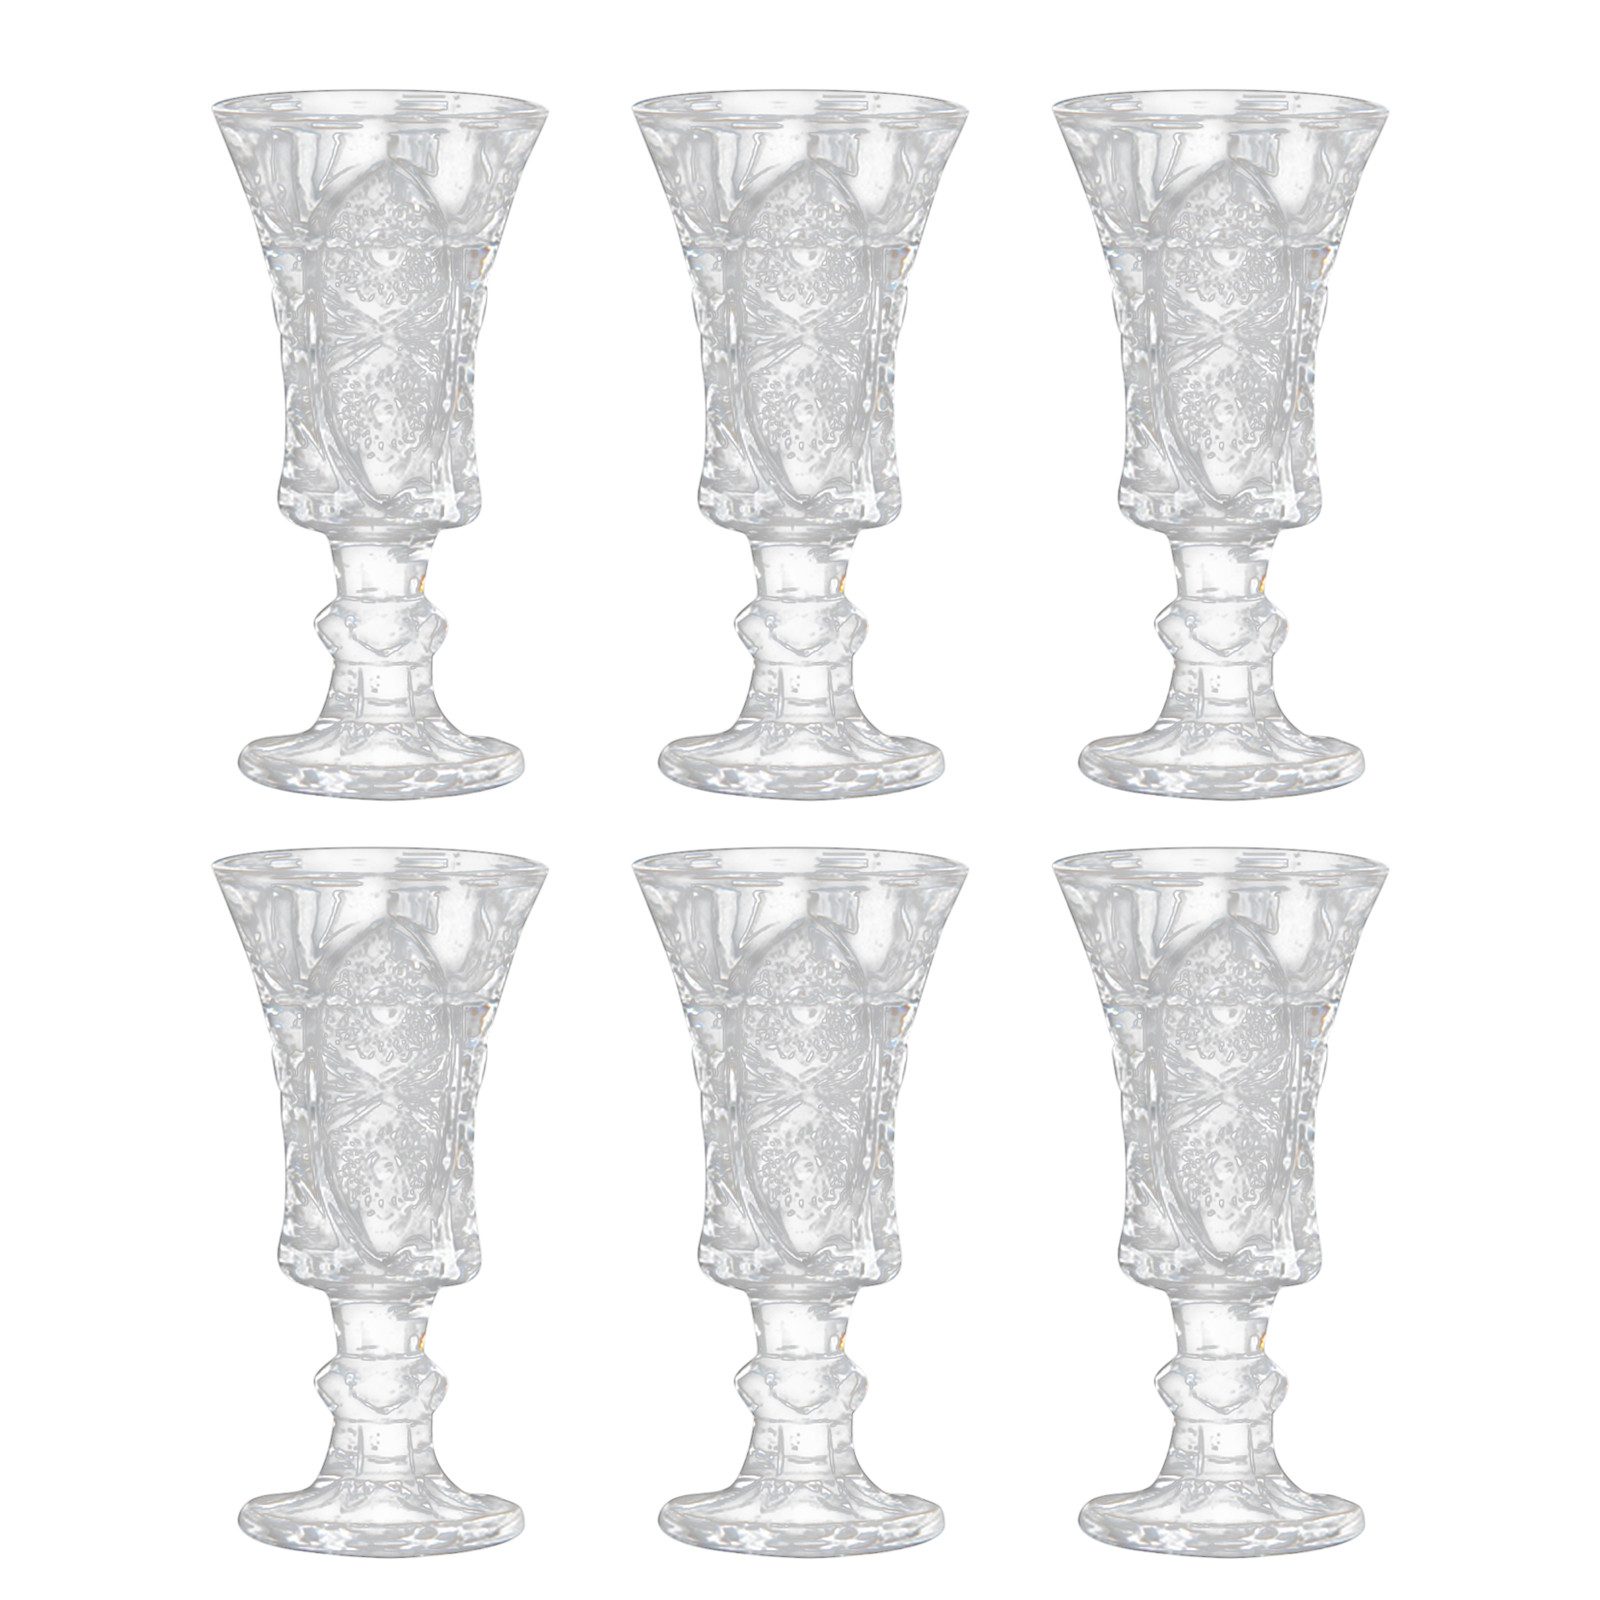 WISHDOR Schnapsglas 6er Set Schnapsgläser Glas Shotgläser Kleine Likörgläser Weinglas, Glas, Kristallglas für den privaten Gebrauch die Gastronomie Bars Catering